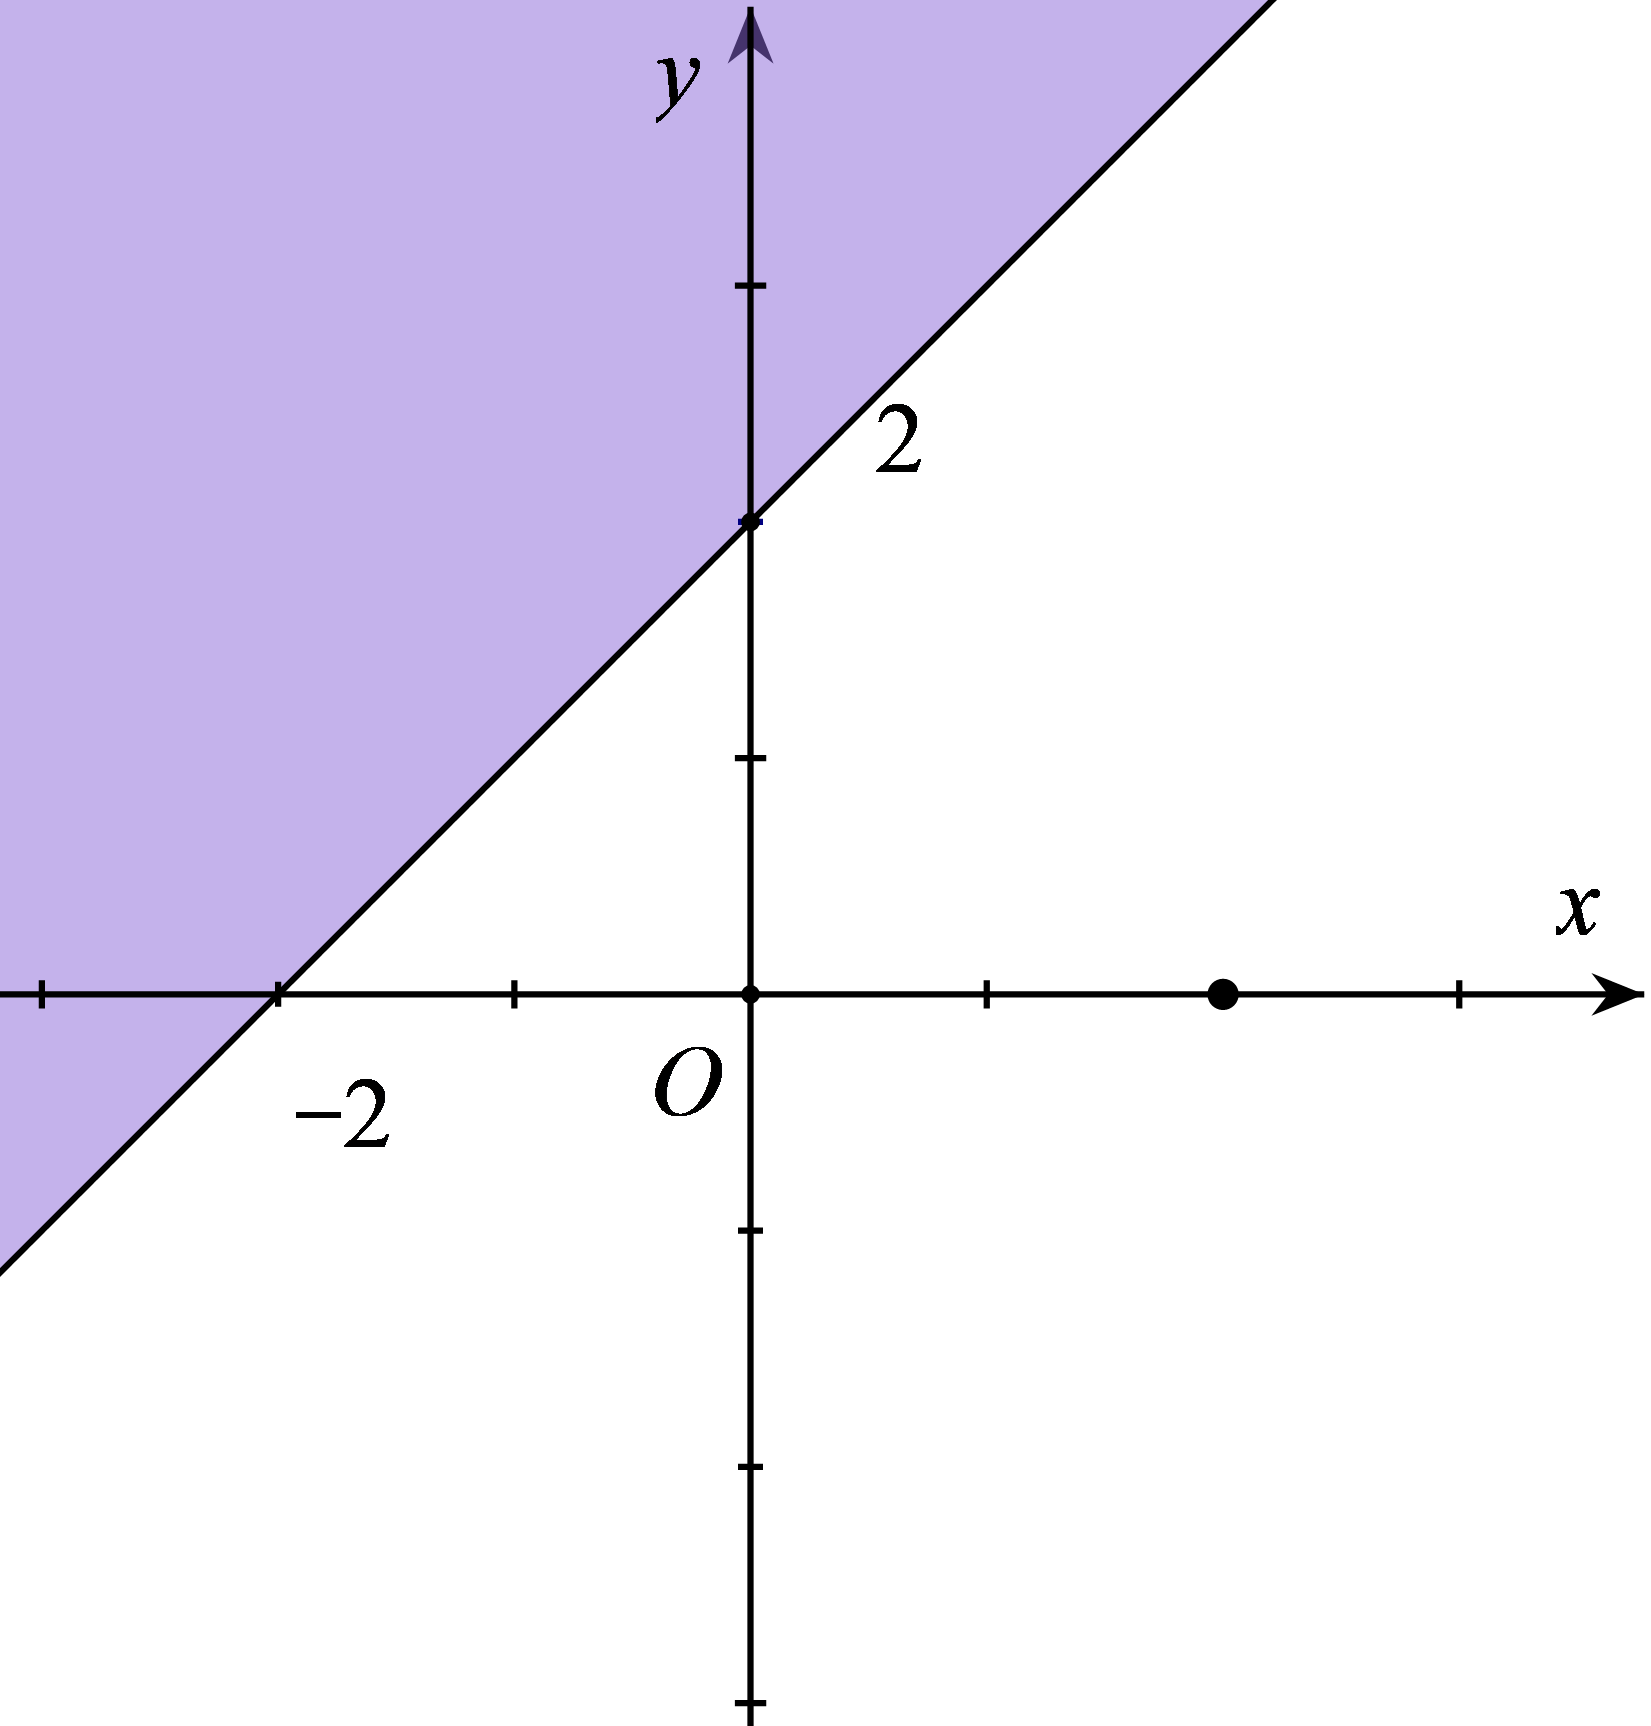 Miền nghiệm của bất phương trình x + y bé hơn bằng 2 là phần tô đậm trong hình vẽ của  (ảnh 3)